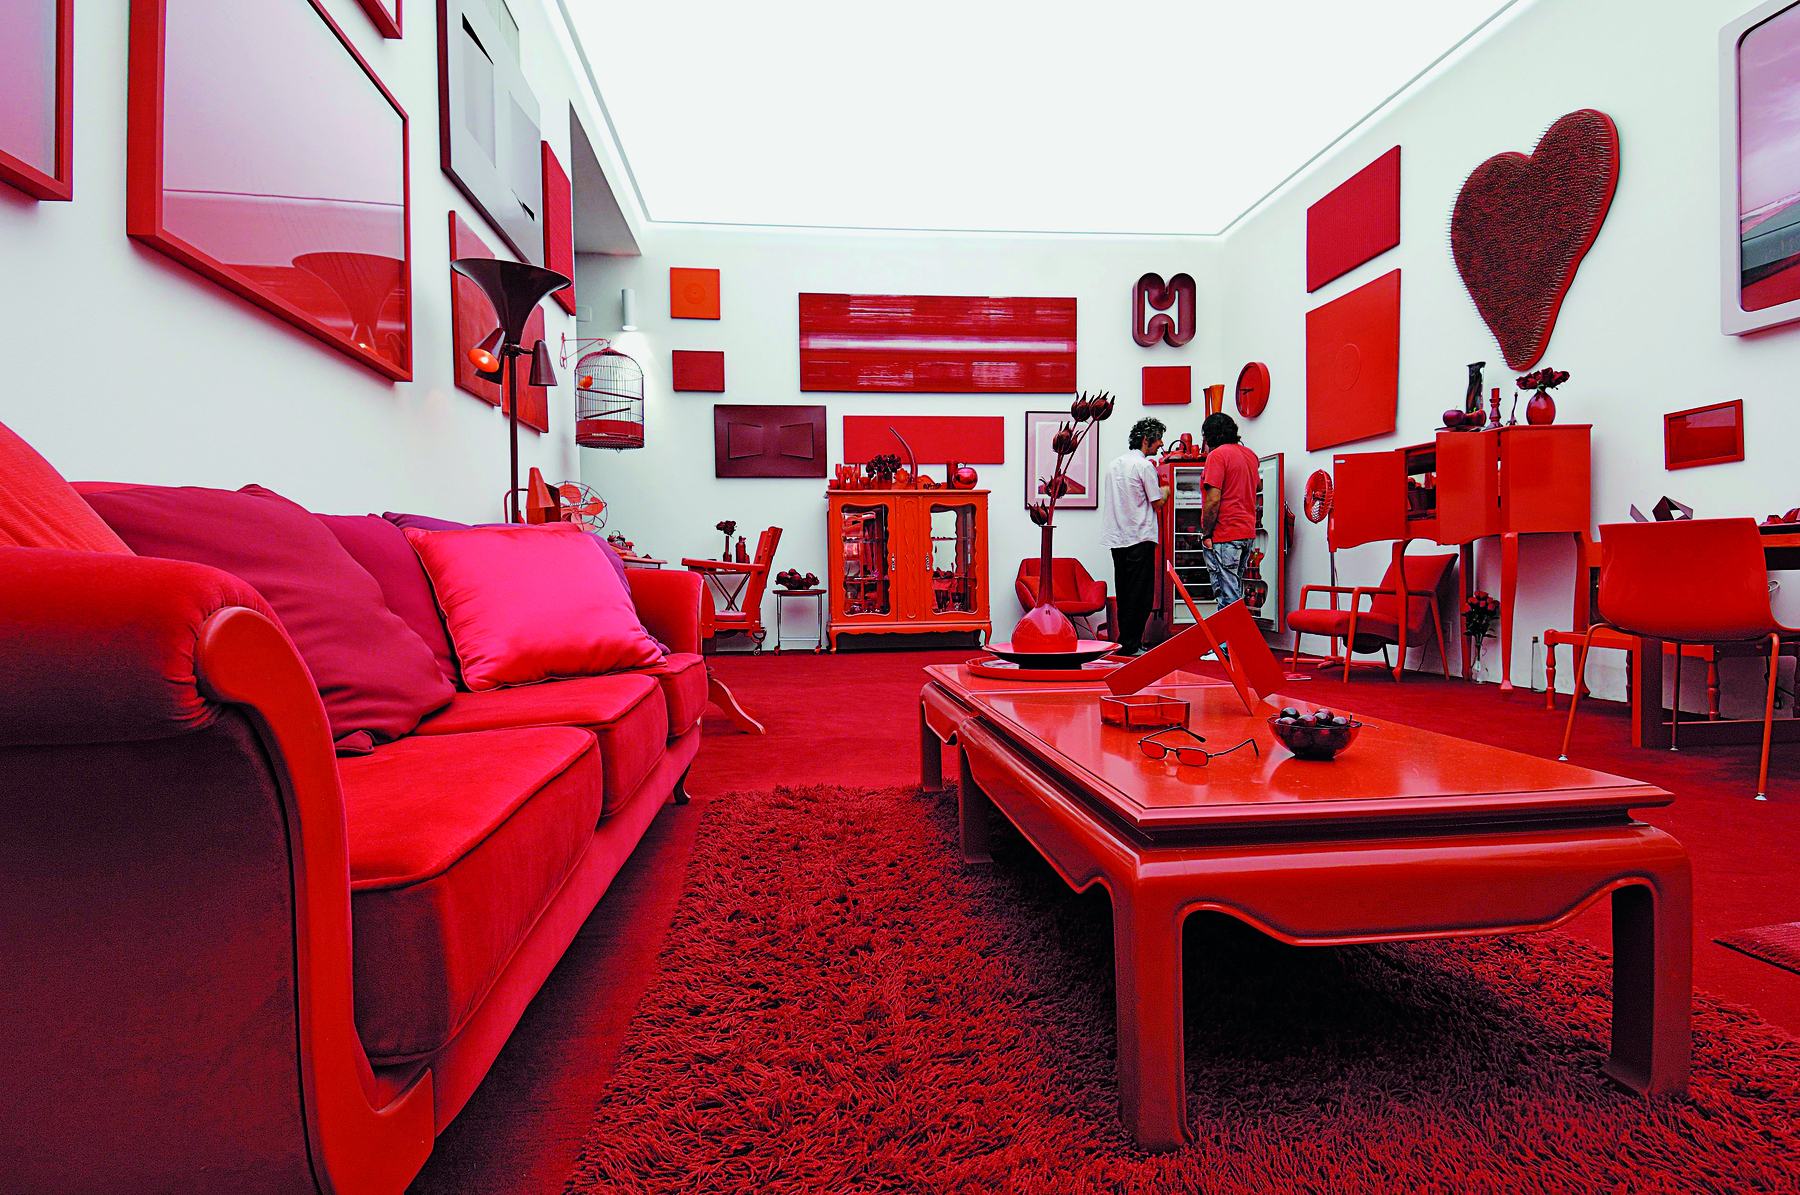 Fotografia. Instalação feita com diversos objetos na cor vermelha em uma sala de paredes cinza claro com teto branco iluminado. Ao fundo, há duas pessoas observando objetos da instalação.